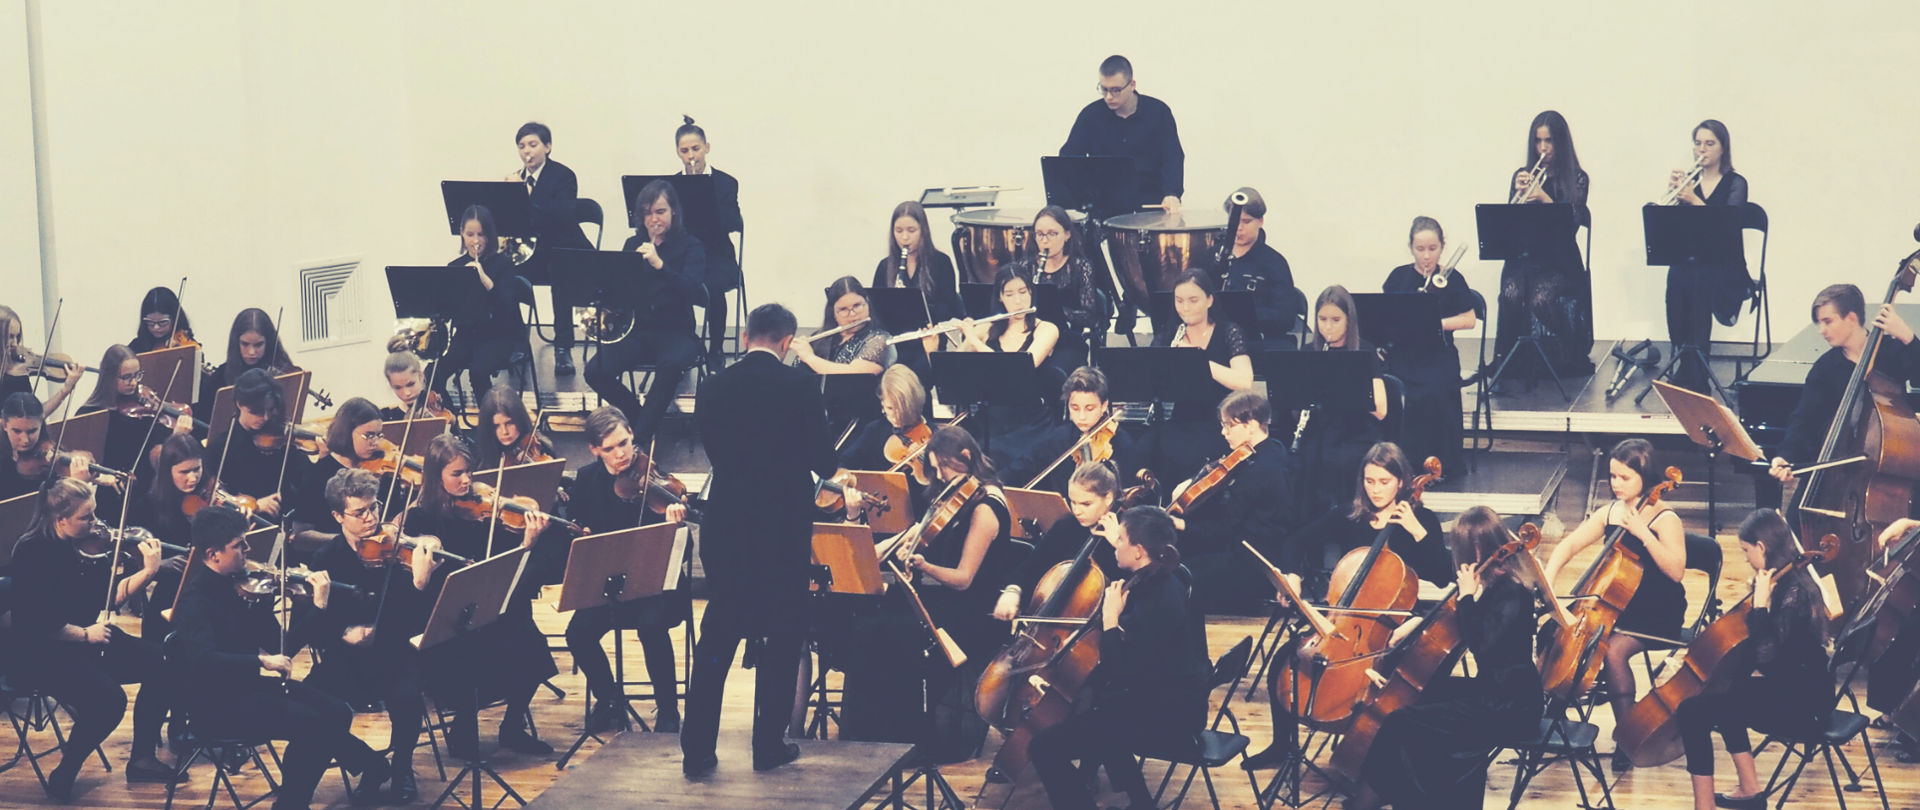 Orkiestra złożona z uczniów Państwowej Szkoły Muzycznej I i II stopnia imienia Karola Szymanowskiego w Płocku siedzi na scenie. Młodzi ludzie grają na instrumentach. Przed nimi dyrygent na podeście. Dyryguje.